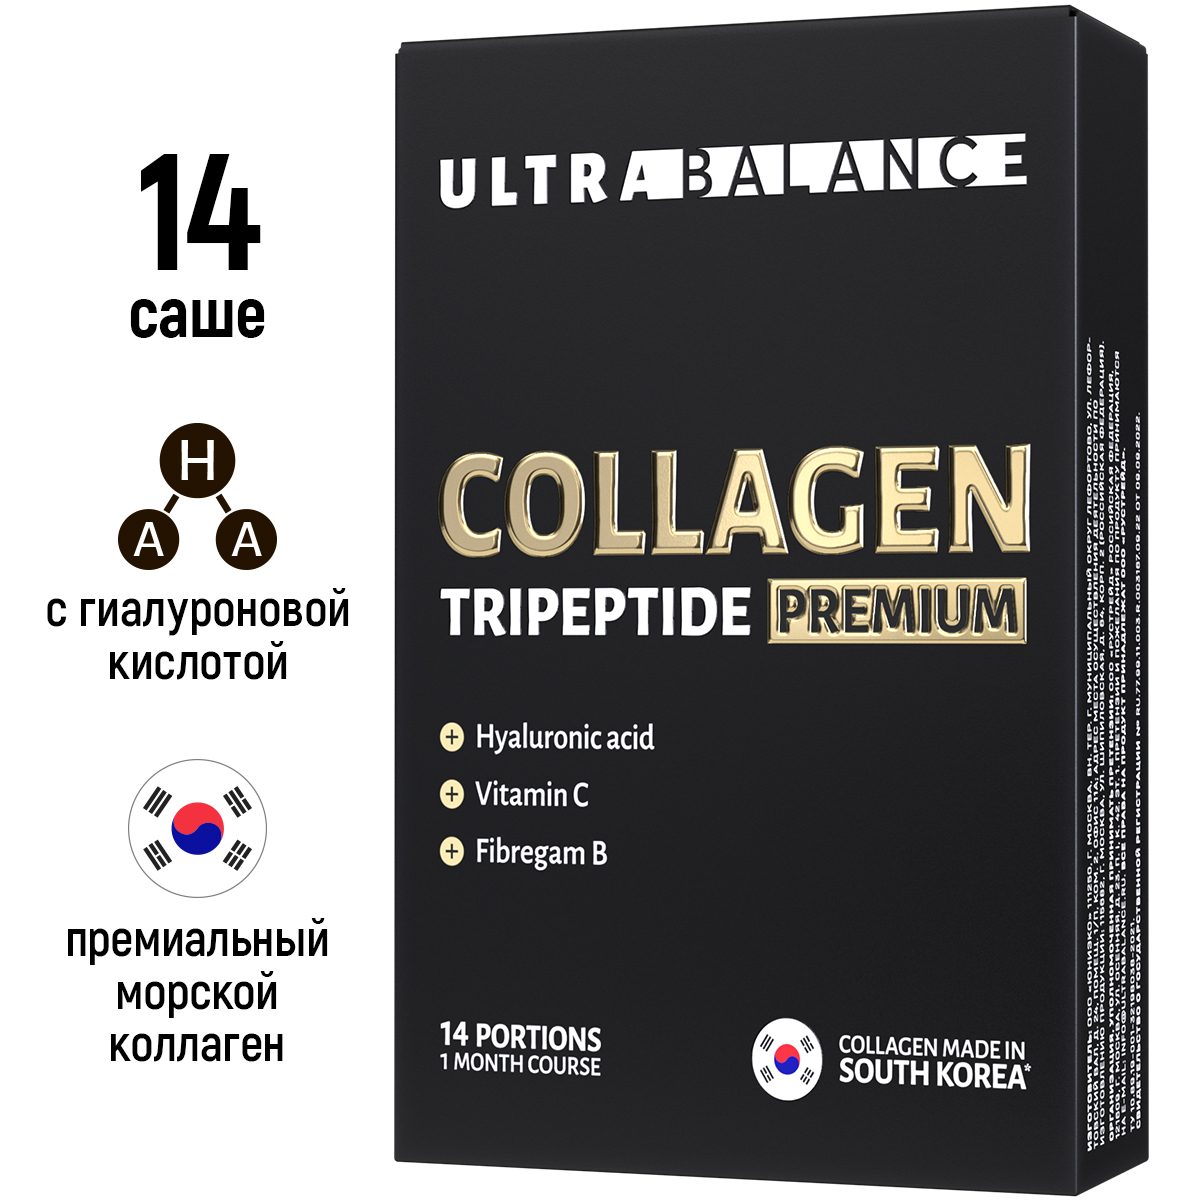 Купить Collagen Tripeptide Premium порошок, Коллаген морской UltraBalance Colagen Tripeptide Premium порошок 14 саше, Россия